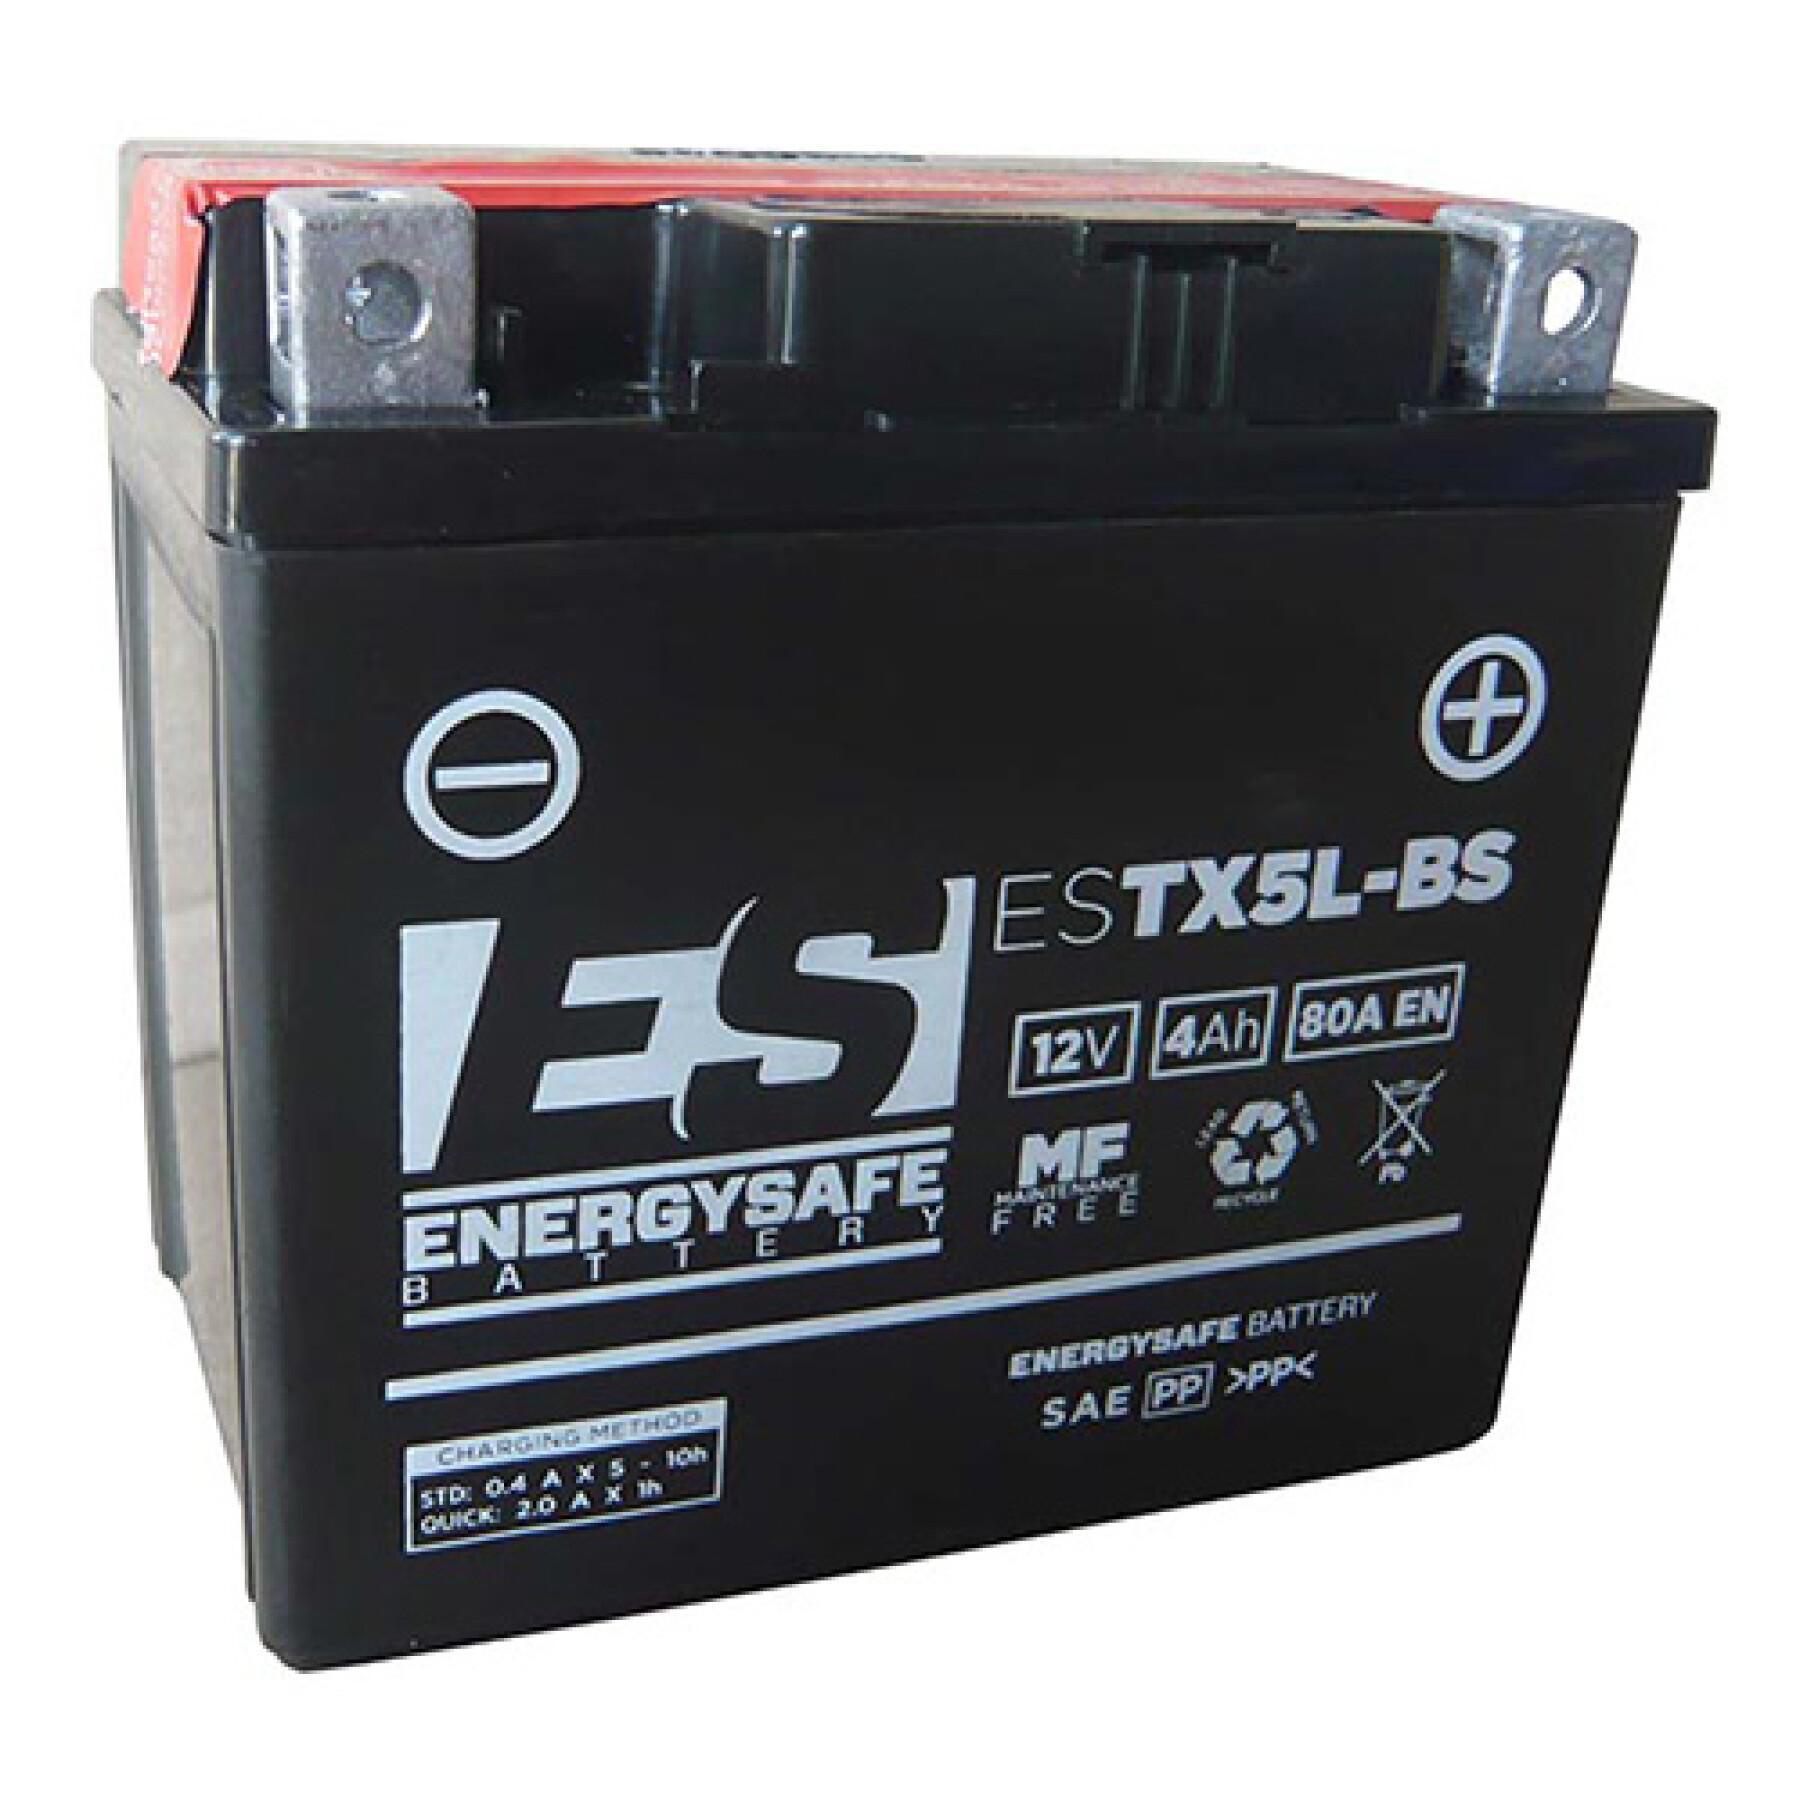 Motorradbatterie Energy Safe ESTX5L-BS 12V/4AH